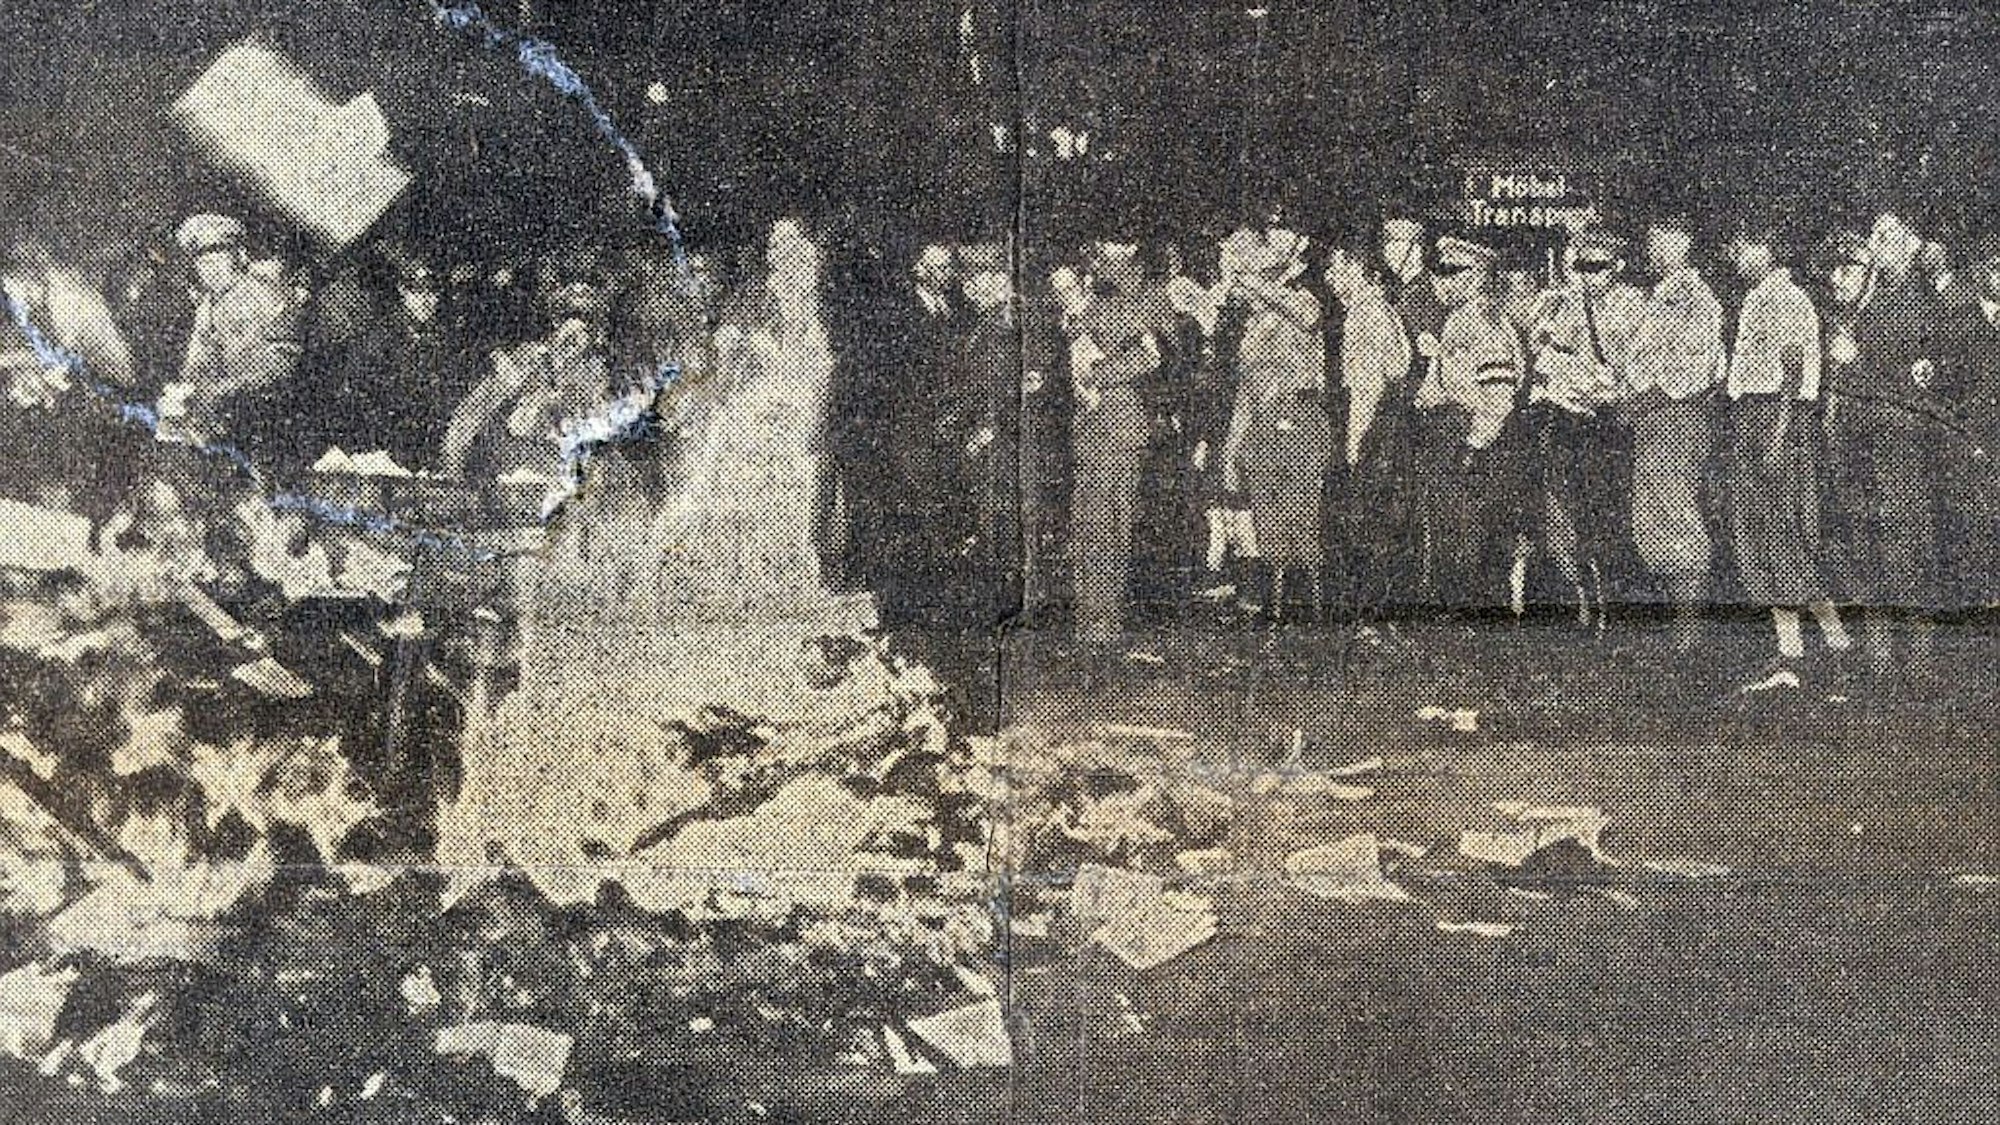 Auf dem schwarz-weiß-Foto ist ein brennender Scheiterhaufen zu sehen, zu seinen Füßen liegen ein paar unverberbrannte Bücher. Im Hintergrund einige Menschen, darunter auch einige in Uniform.